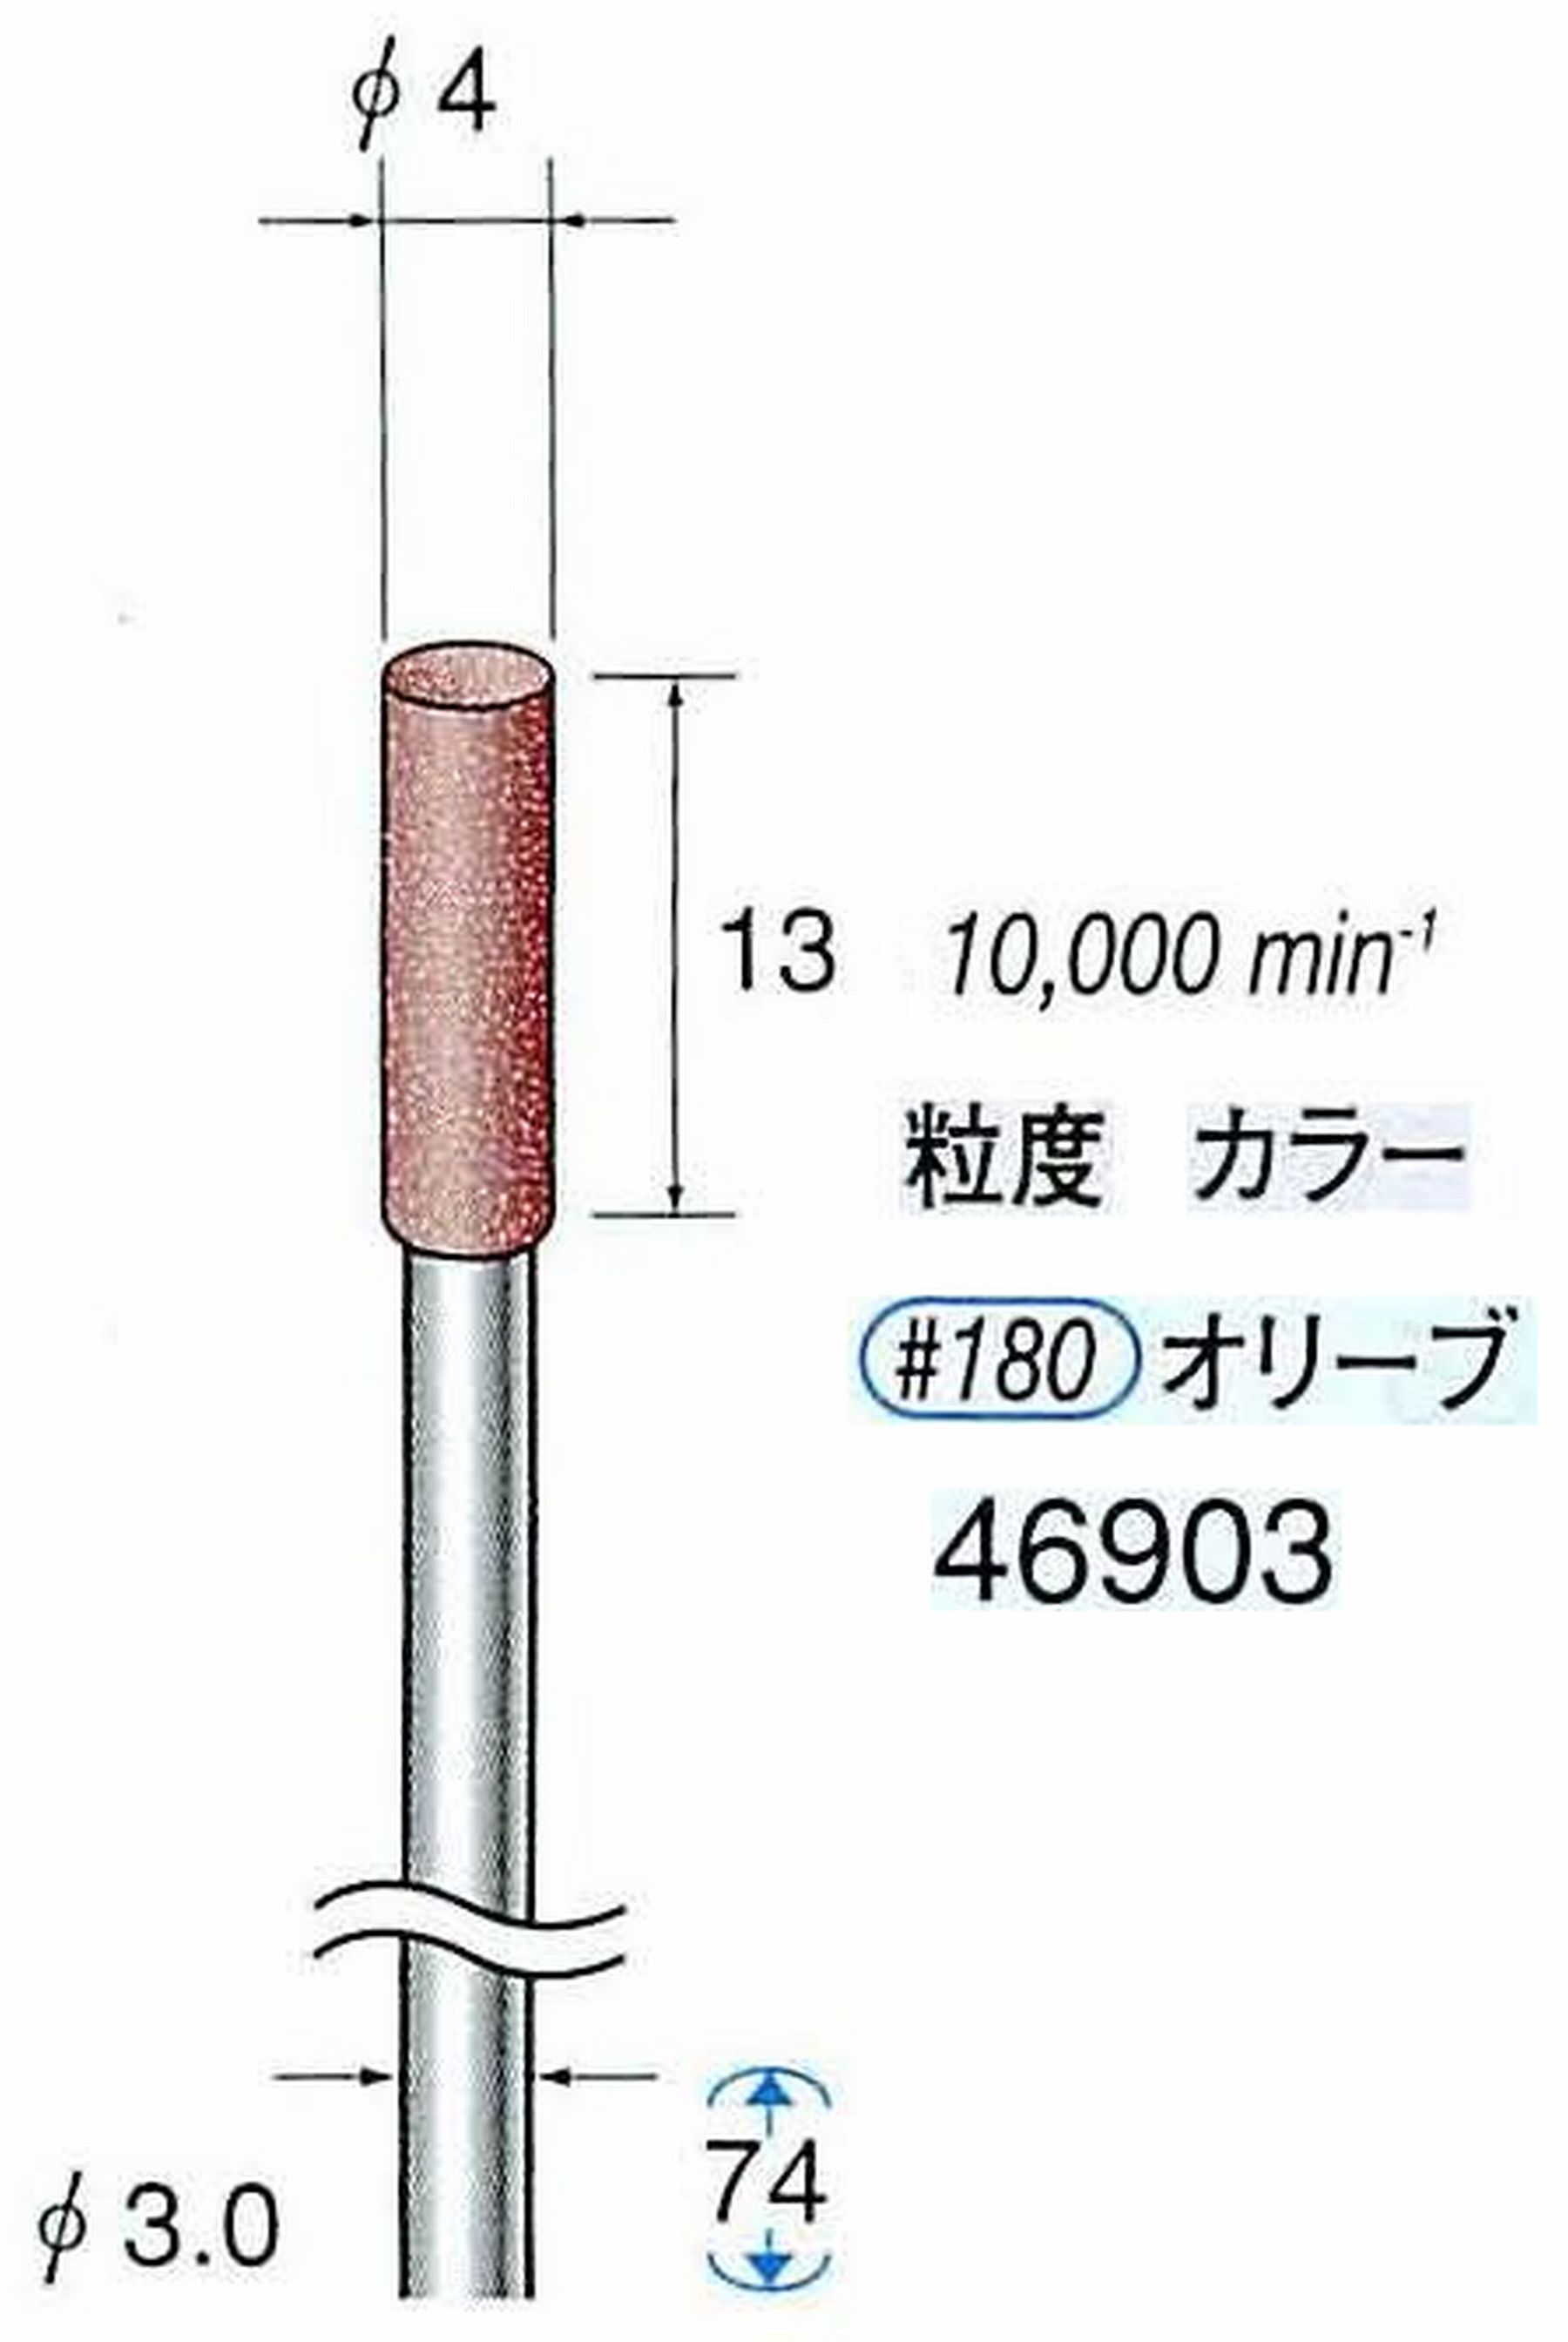 ナカニシ/NAKANISHI ゴム砥石 ロングパワーポリッシャー(WA砥粒)ゴム質の硬さ：ミディアム 軸径(シャンク) φ3.0mm 46903